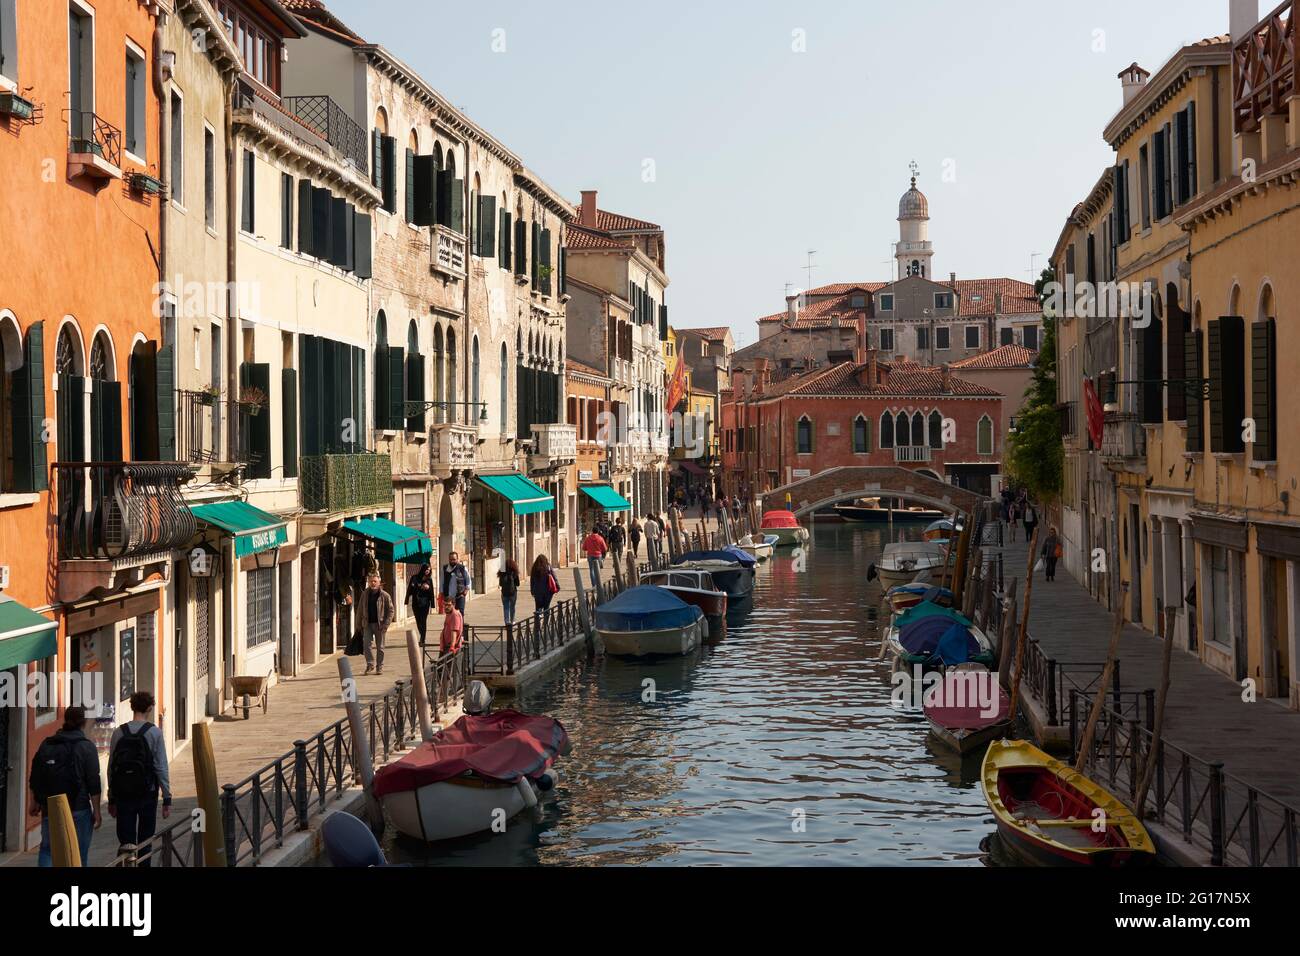 Strade e canal in città italiana, Venezia, Italia, 2017 Foto Stock